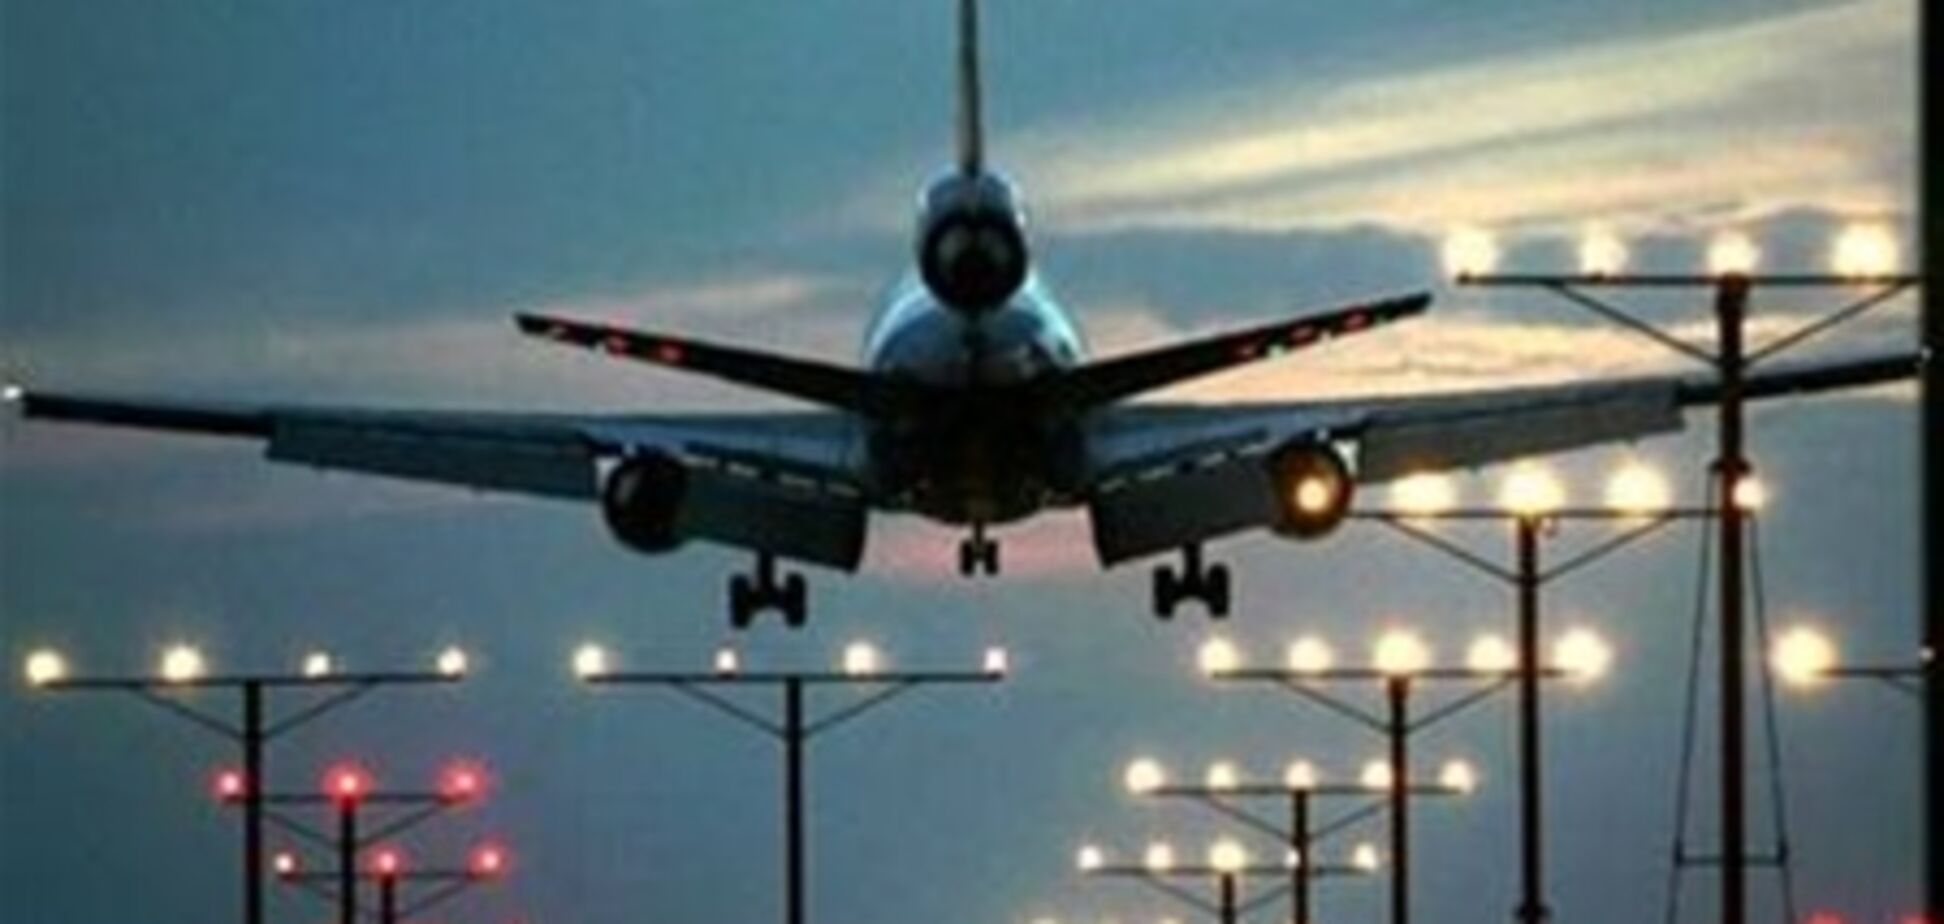 Римский аэропорт Чампино закрыт до 2 октября